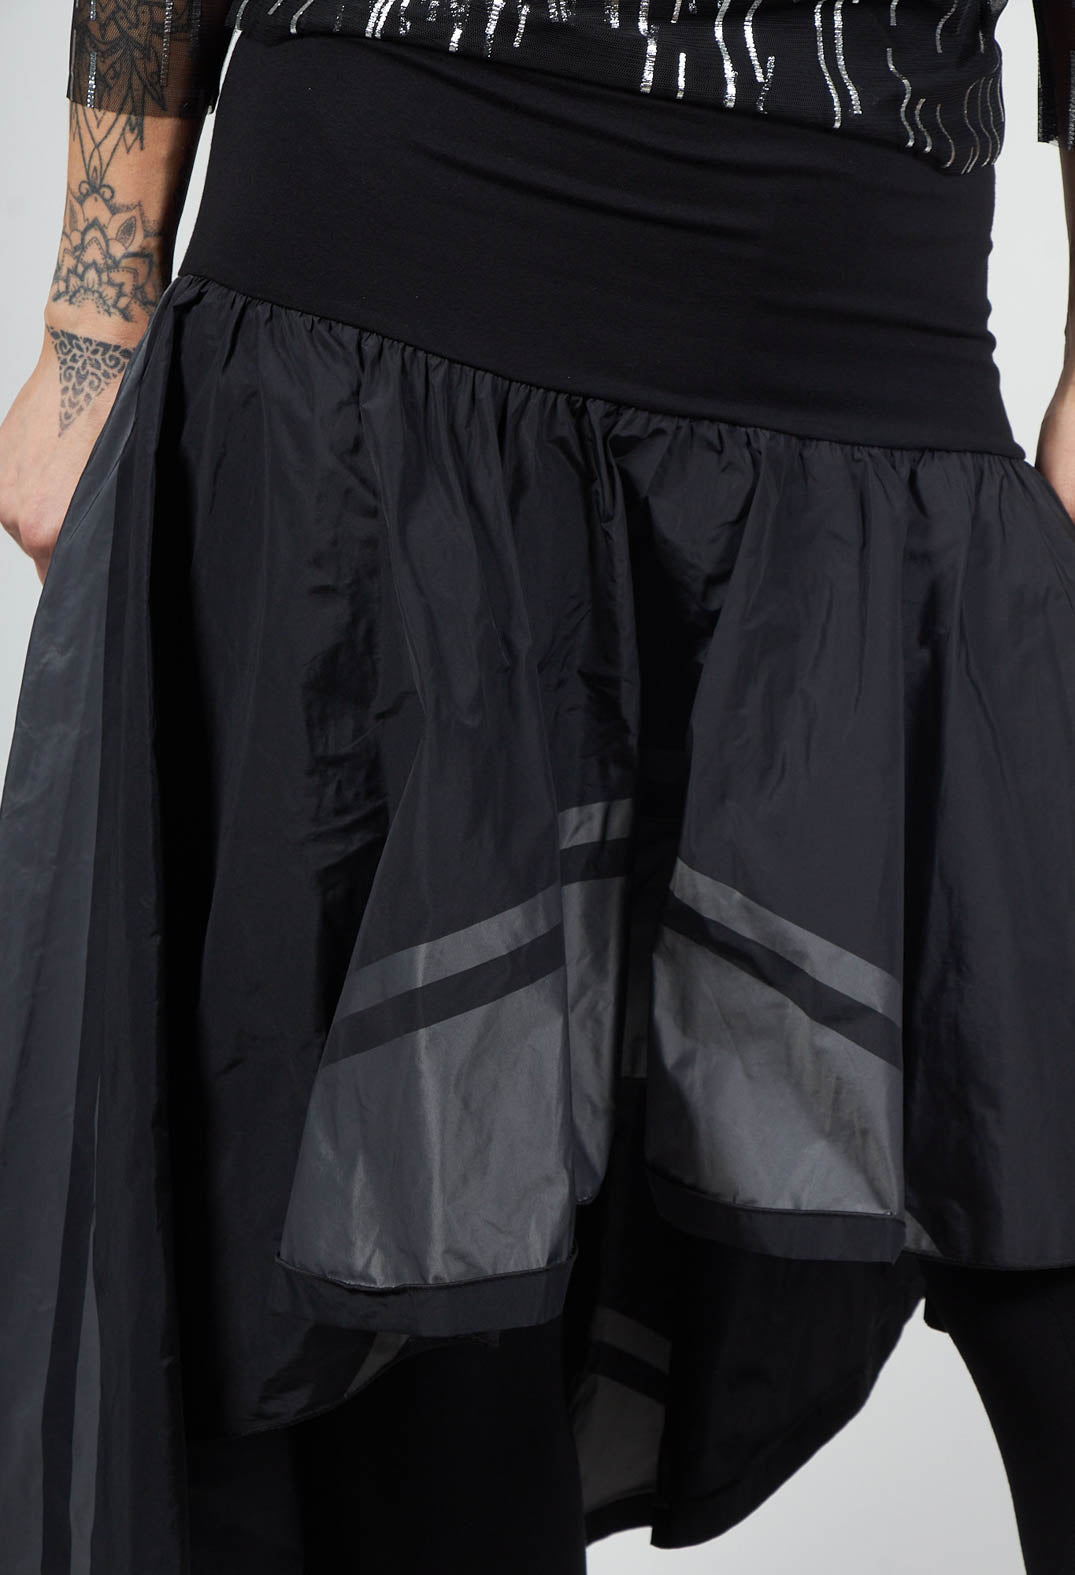 Veza Skirt in Black Grey